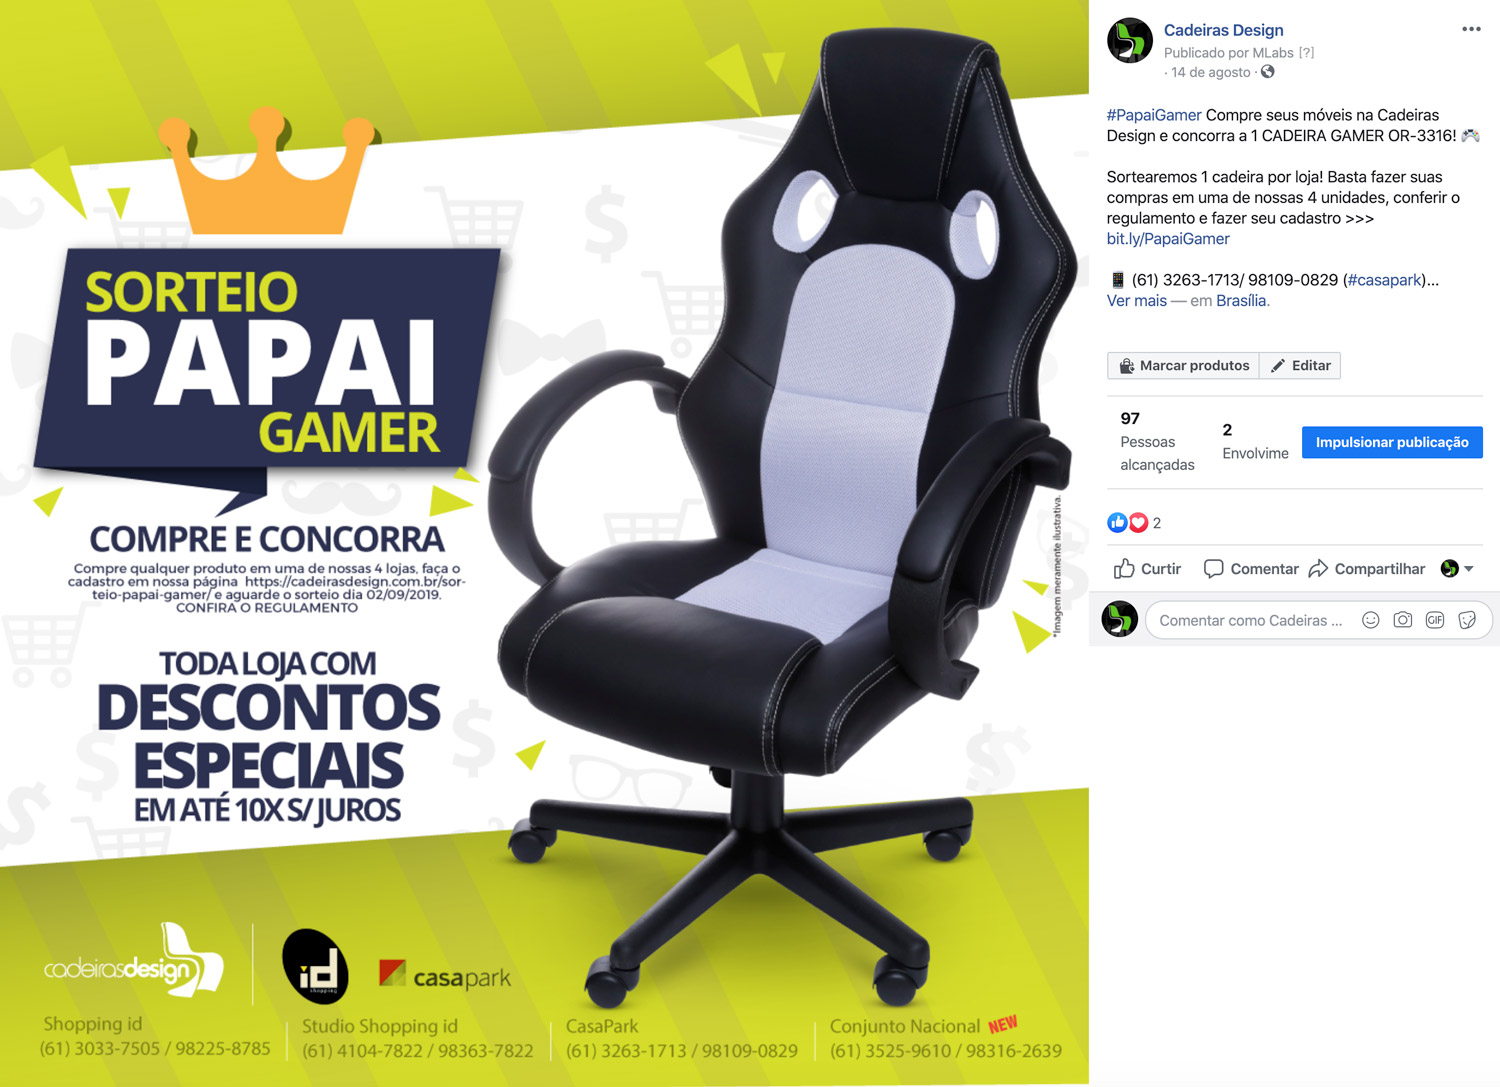 vamos oxigenar sua empresa/negócio nas mídias sociais em Londrina ou Paraná.|Você consegue Campanhas de Facebook com o Marketing Digital